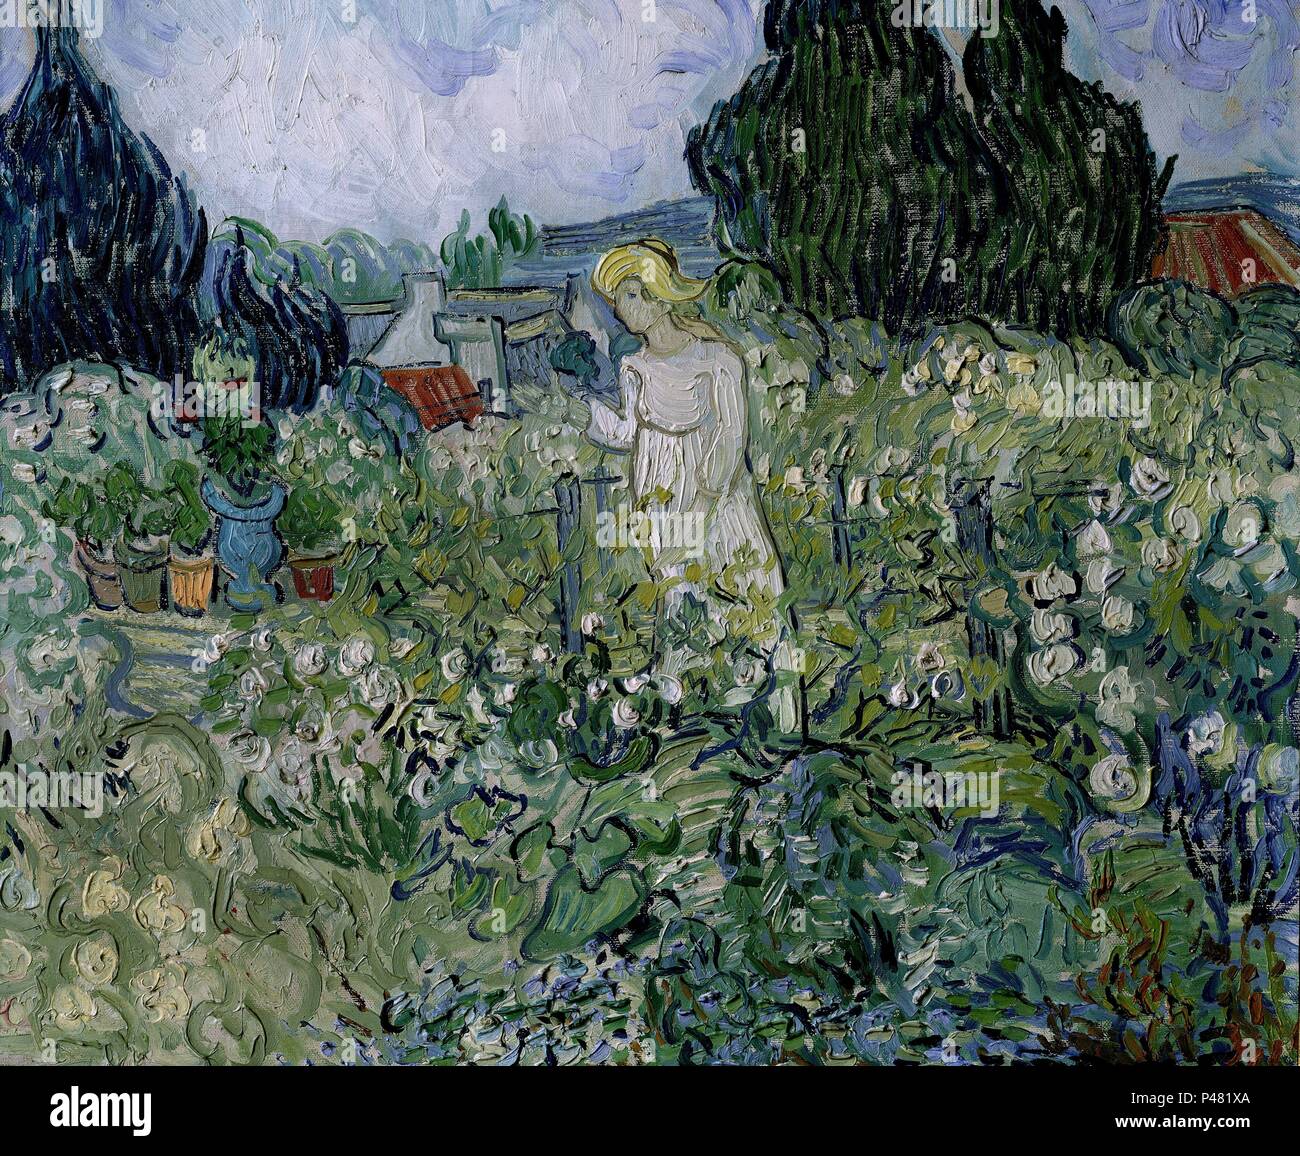 Mademoiselle Gachet in Ihrem Garten in Auvers-sur-Oise - 1890 - 46 x 55 cm - Öl auf Leinwand. Autor: Vincent van Gogh (1853-1890). Lage: Musee D'Orsay, Frankreich. Auch als: LA SEÑORA GACHET EN SU JARDIN bekannt. Stockfoto